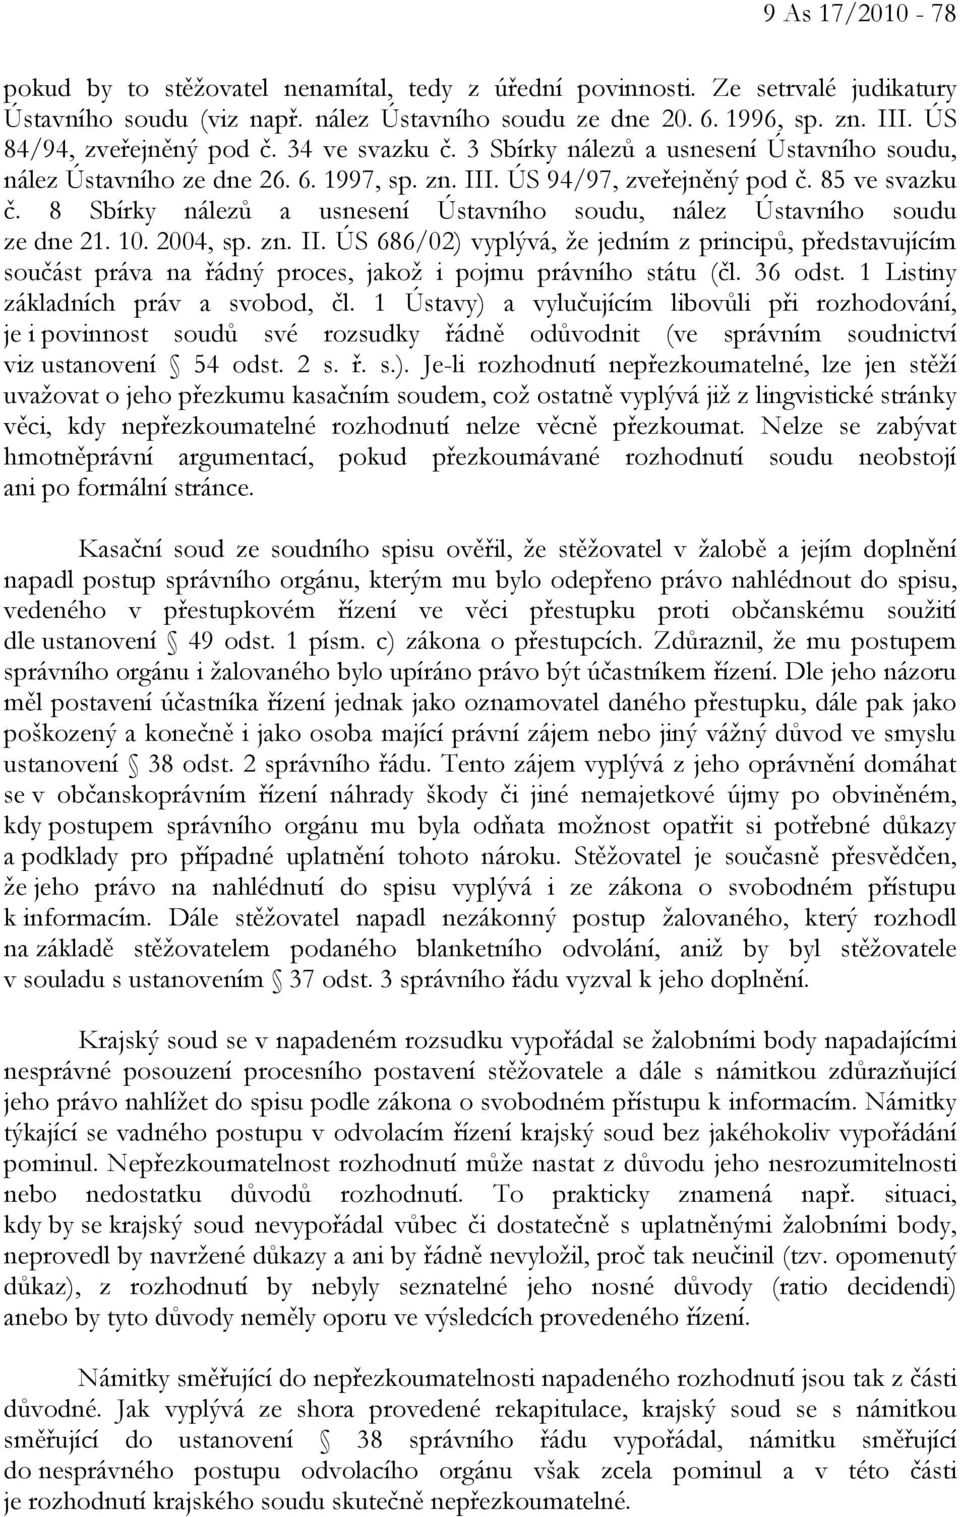 8 Sbírky nálezů a usnesení Ústavního soudu, nález Ústavního soudu ze dne 21. 10. 2004, sp. zn. II.